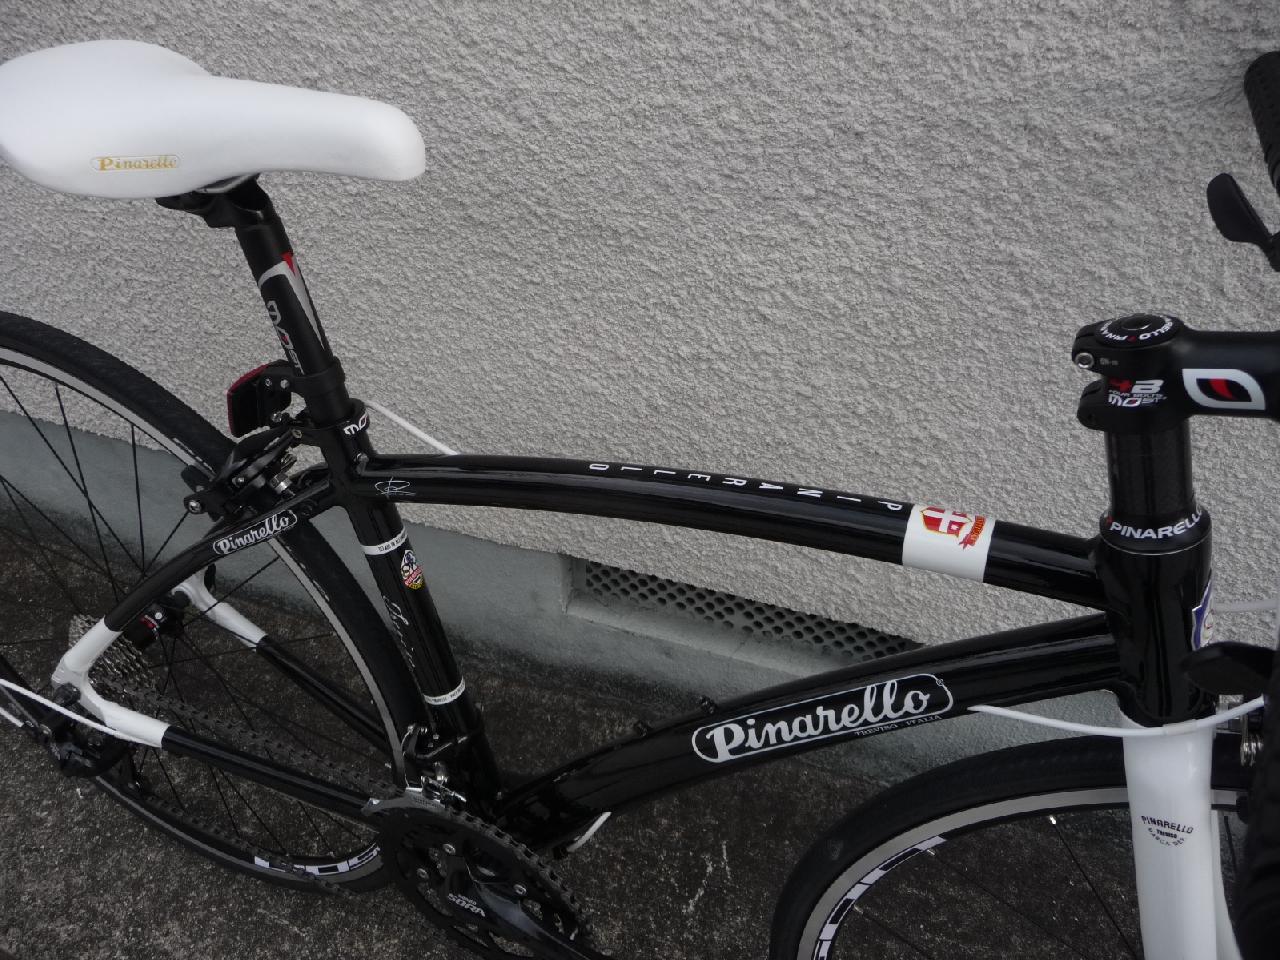 2014 PINARELLO TREVISO/2014 ピナレロ トレヴィソ サイクルスポーツ用品 増谷自転車